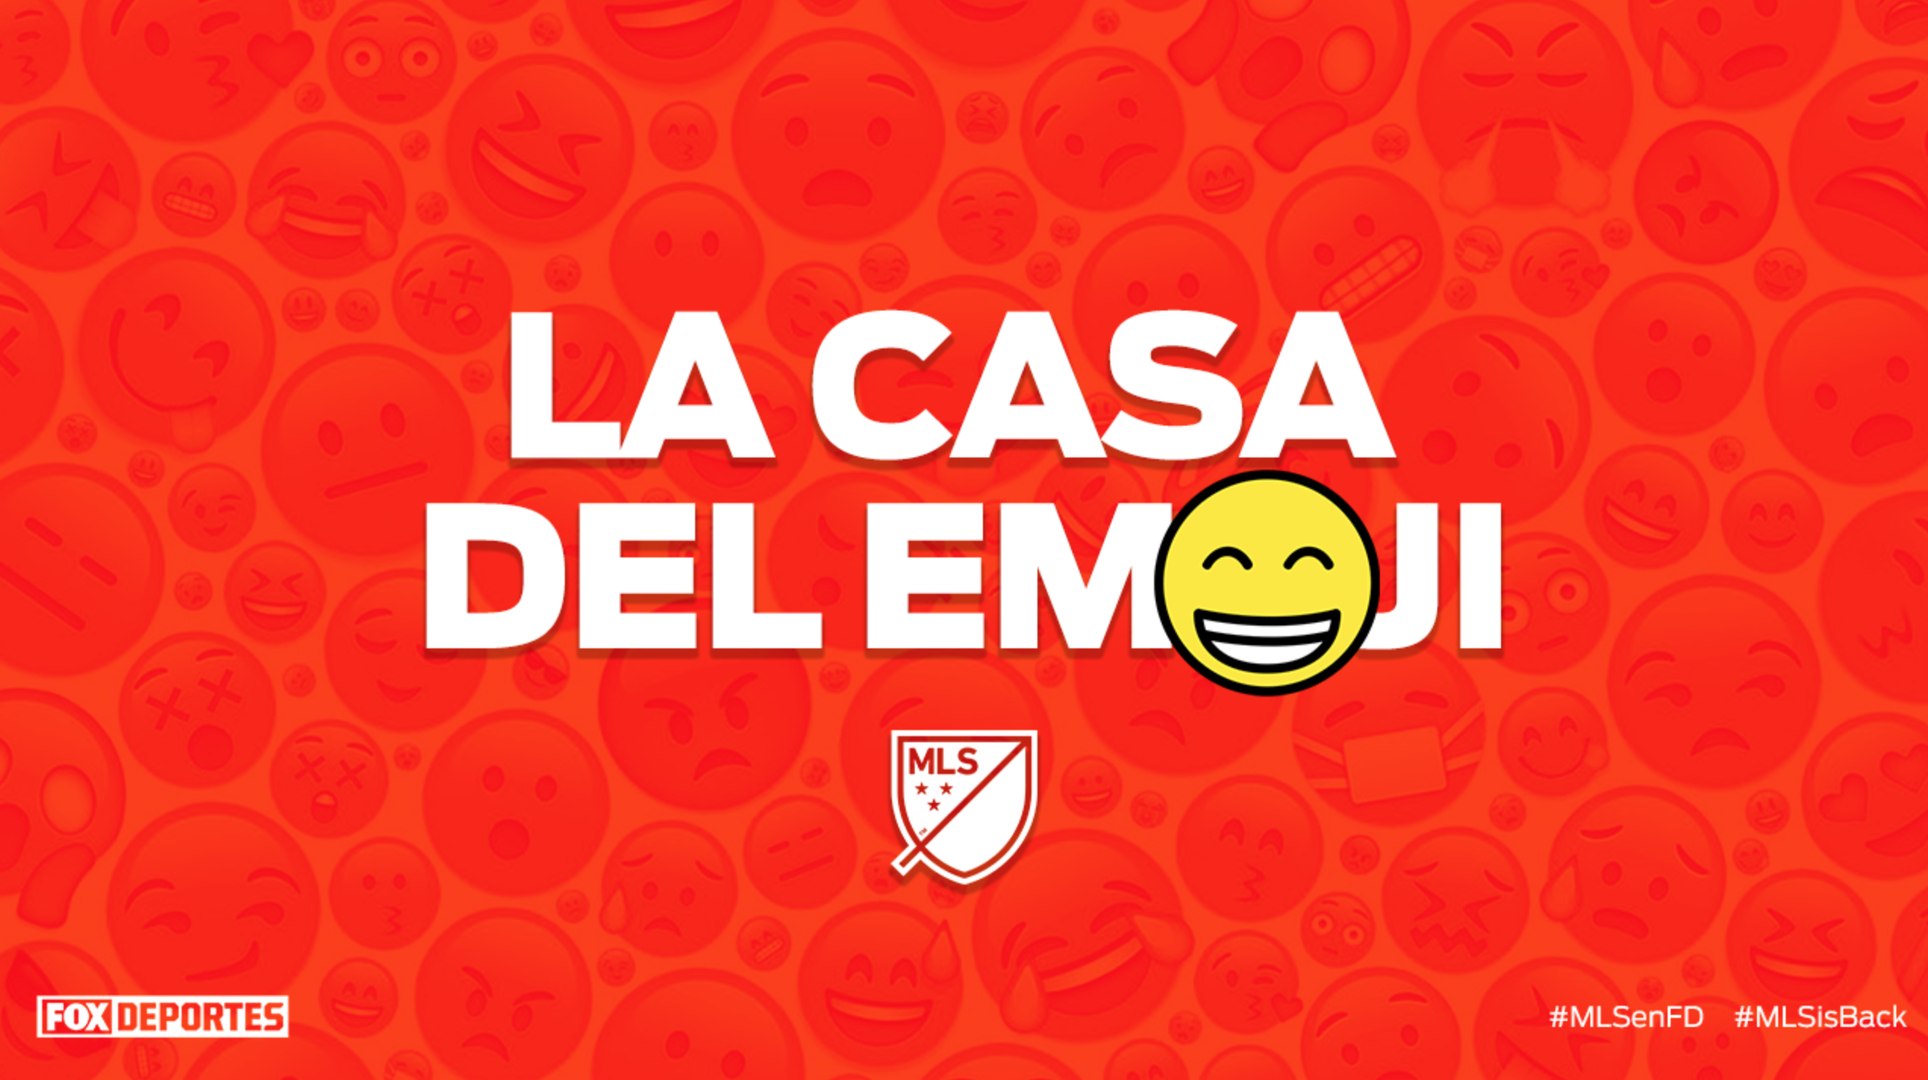 Mls La Casa Del Emoji - roblox poop emoji